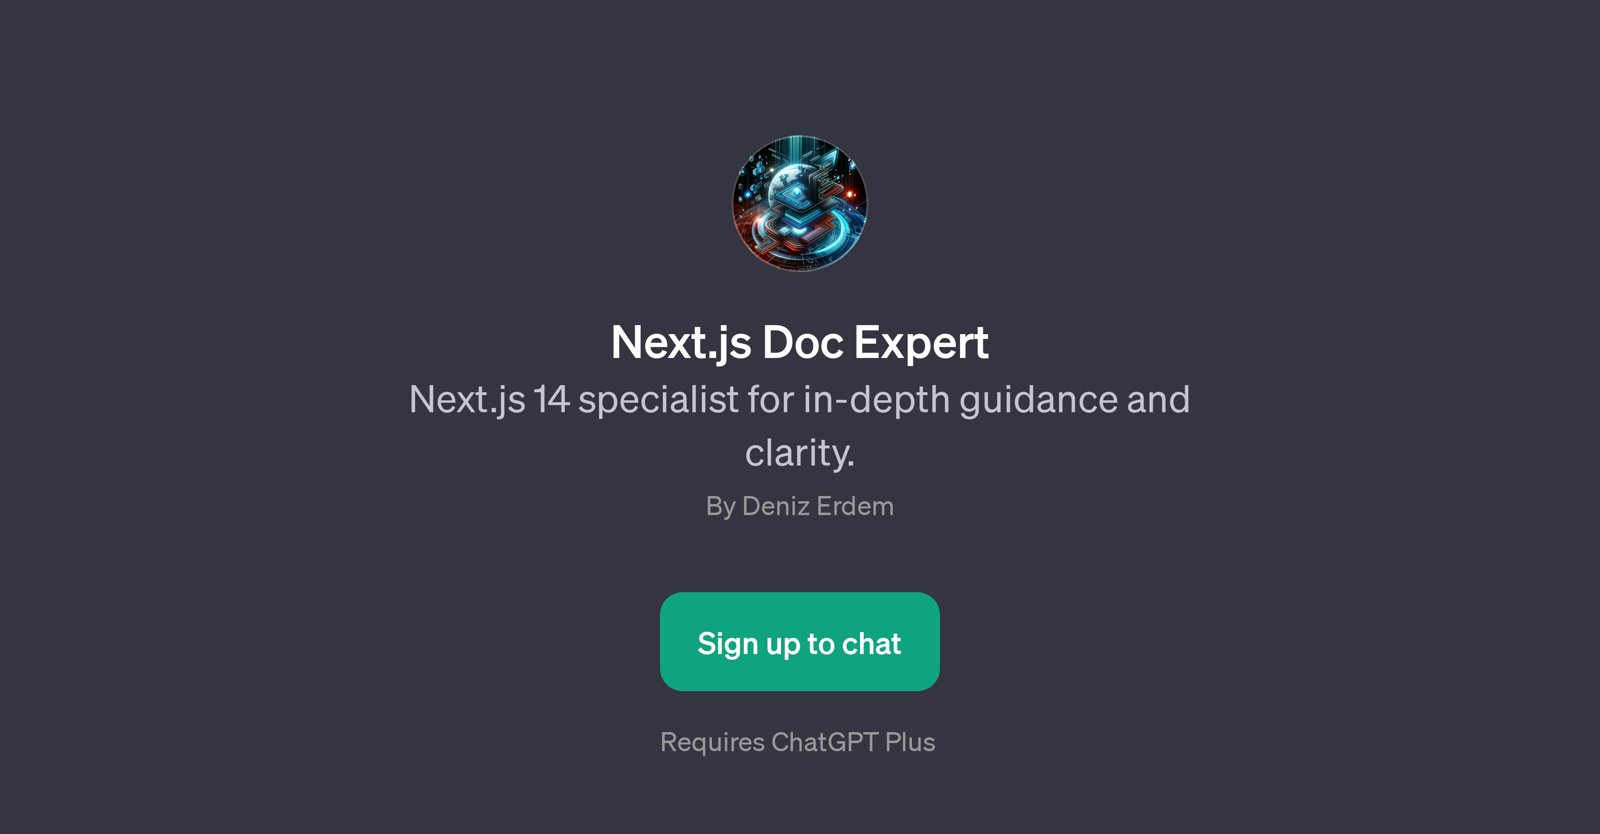 Next.js Doc Expert website